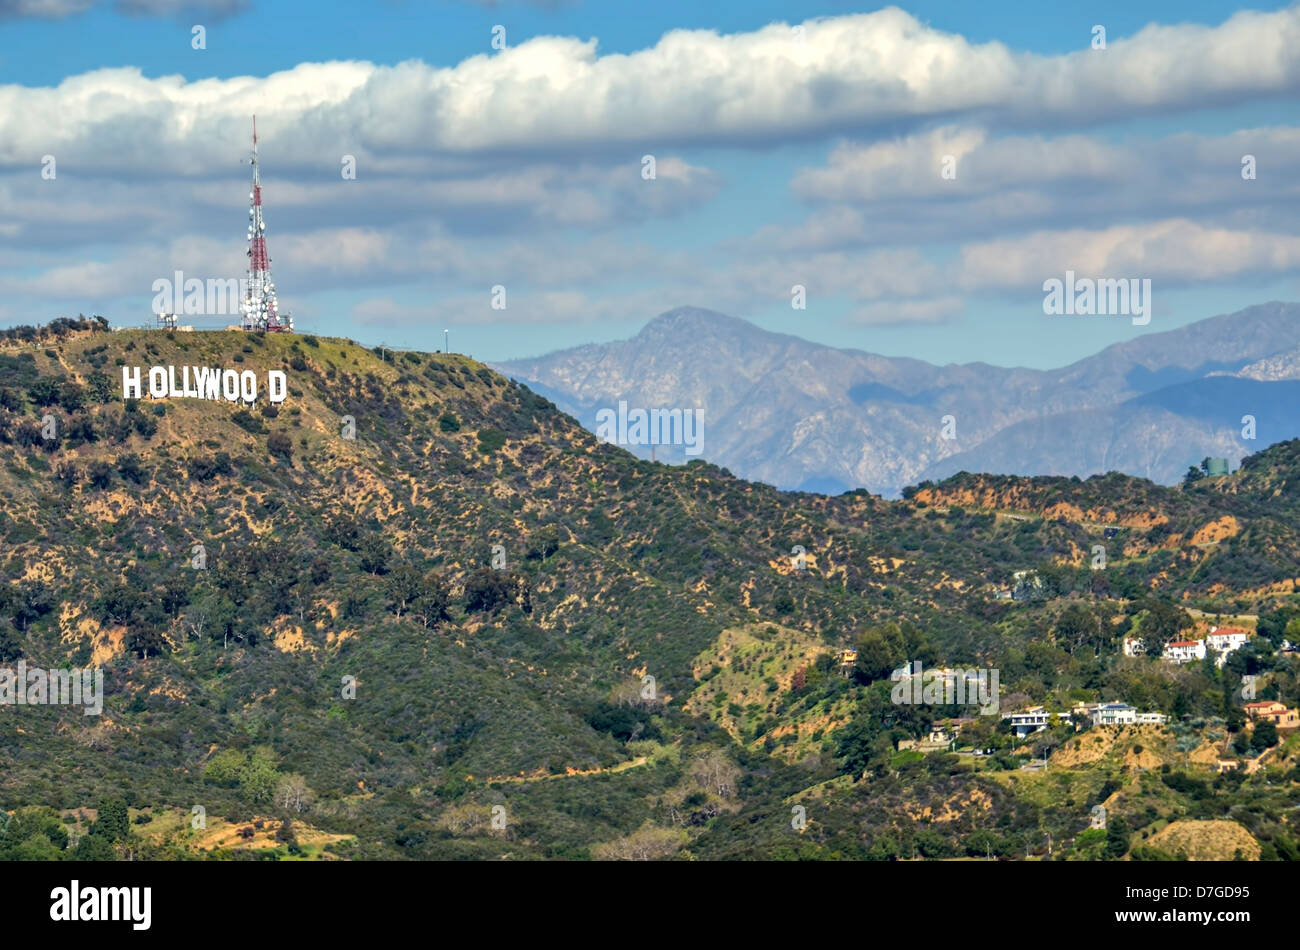 Cartel de Hollywood en las colinas de Hollywood, West Hollywood, Los Angeles, California Foto de stock